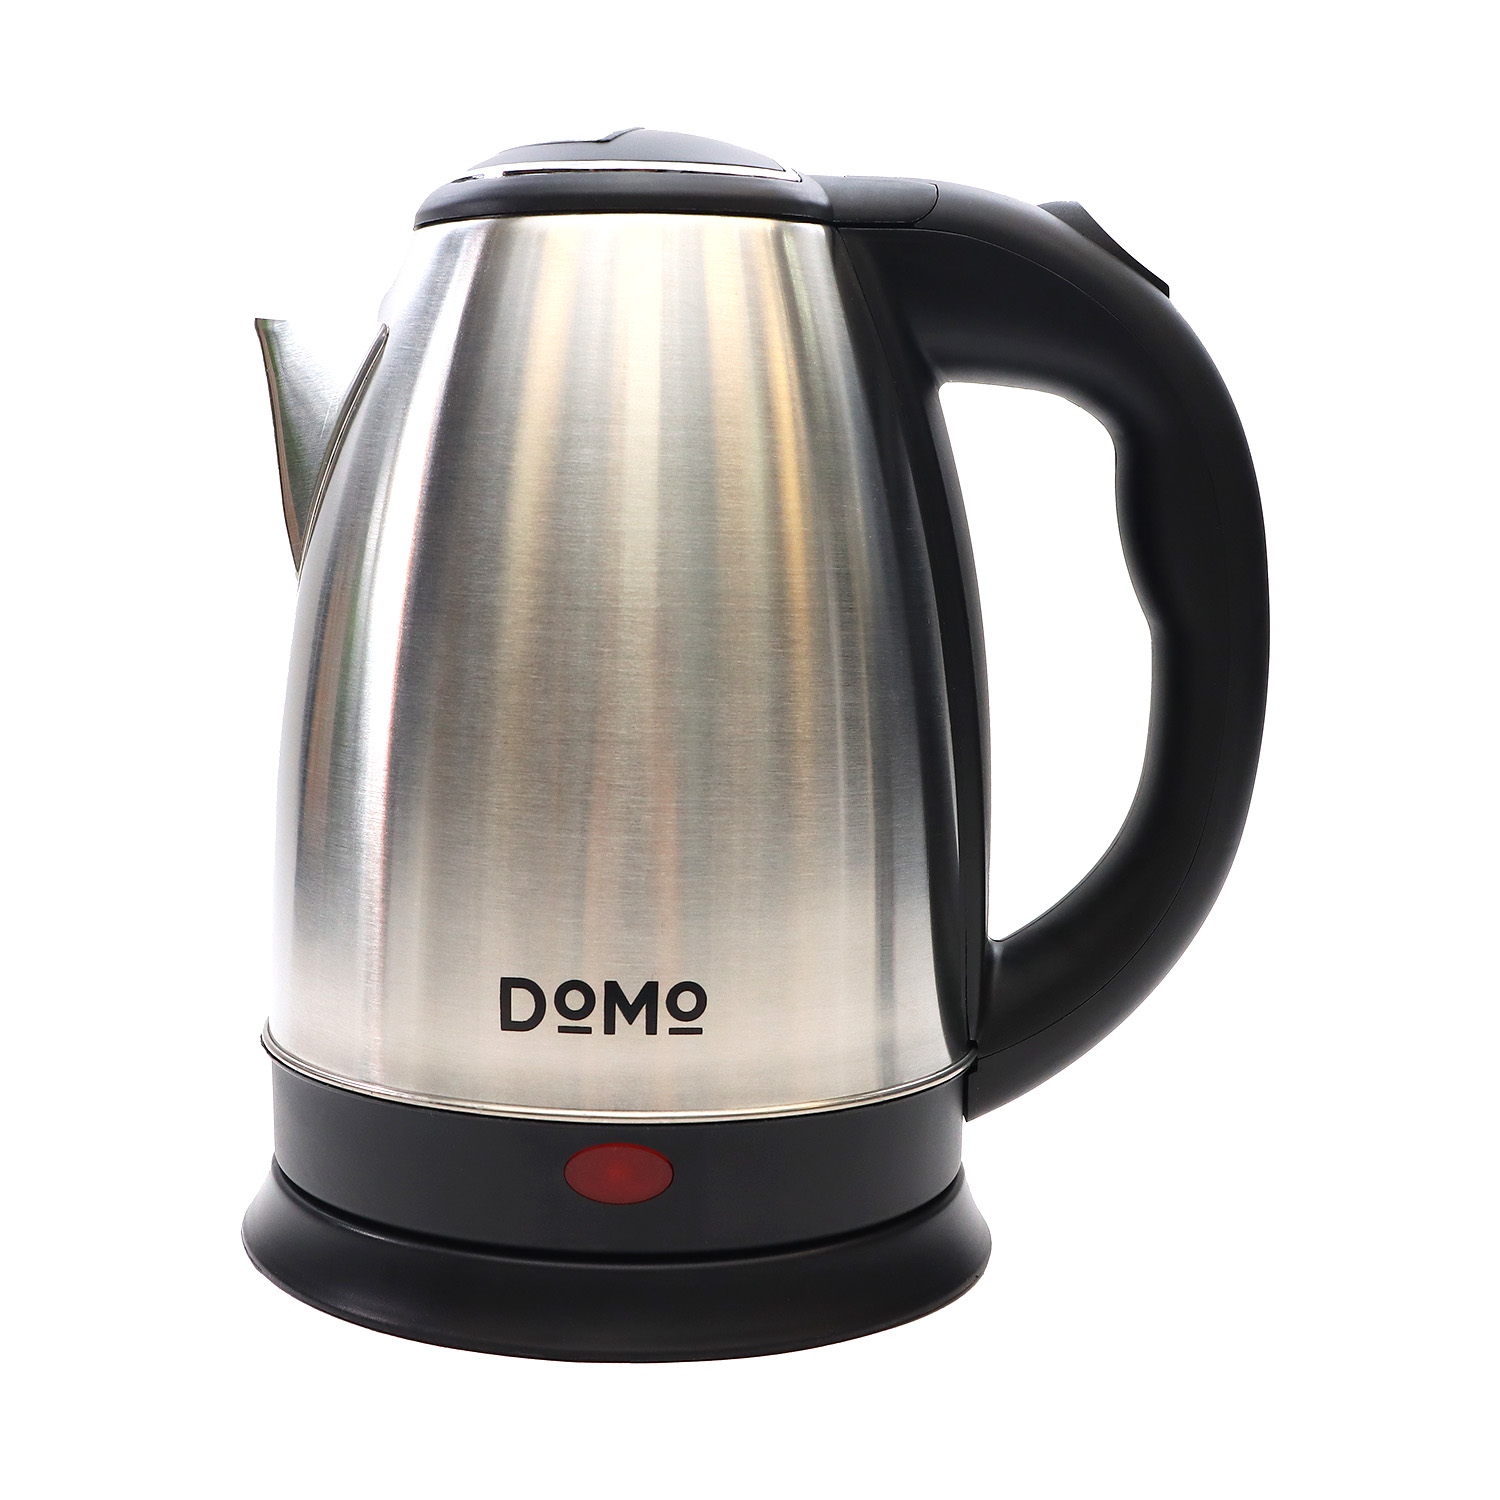 

Чайник DOMO SML1801 2л. 1.6 кВт, металл/пластик, серебристый/черный (SML1801M) плохая упаковка, небольшие замятия на корпусе, не использовался, SML1801